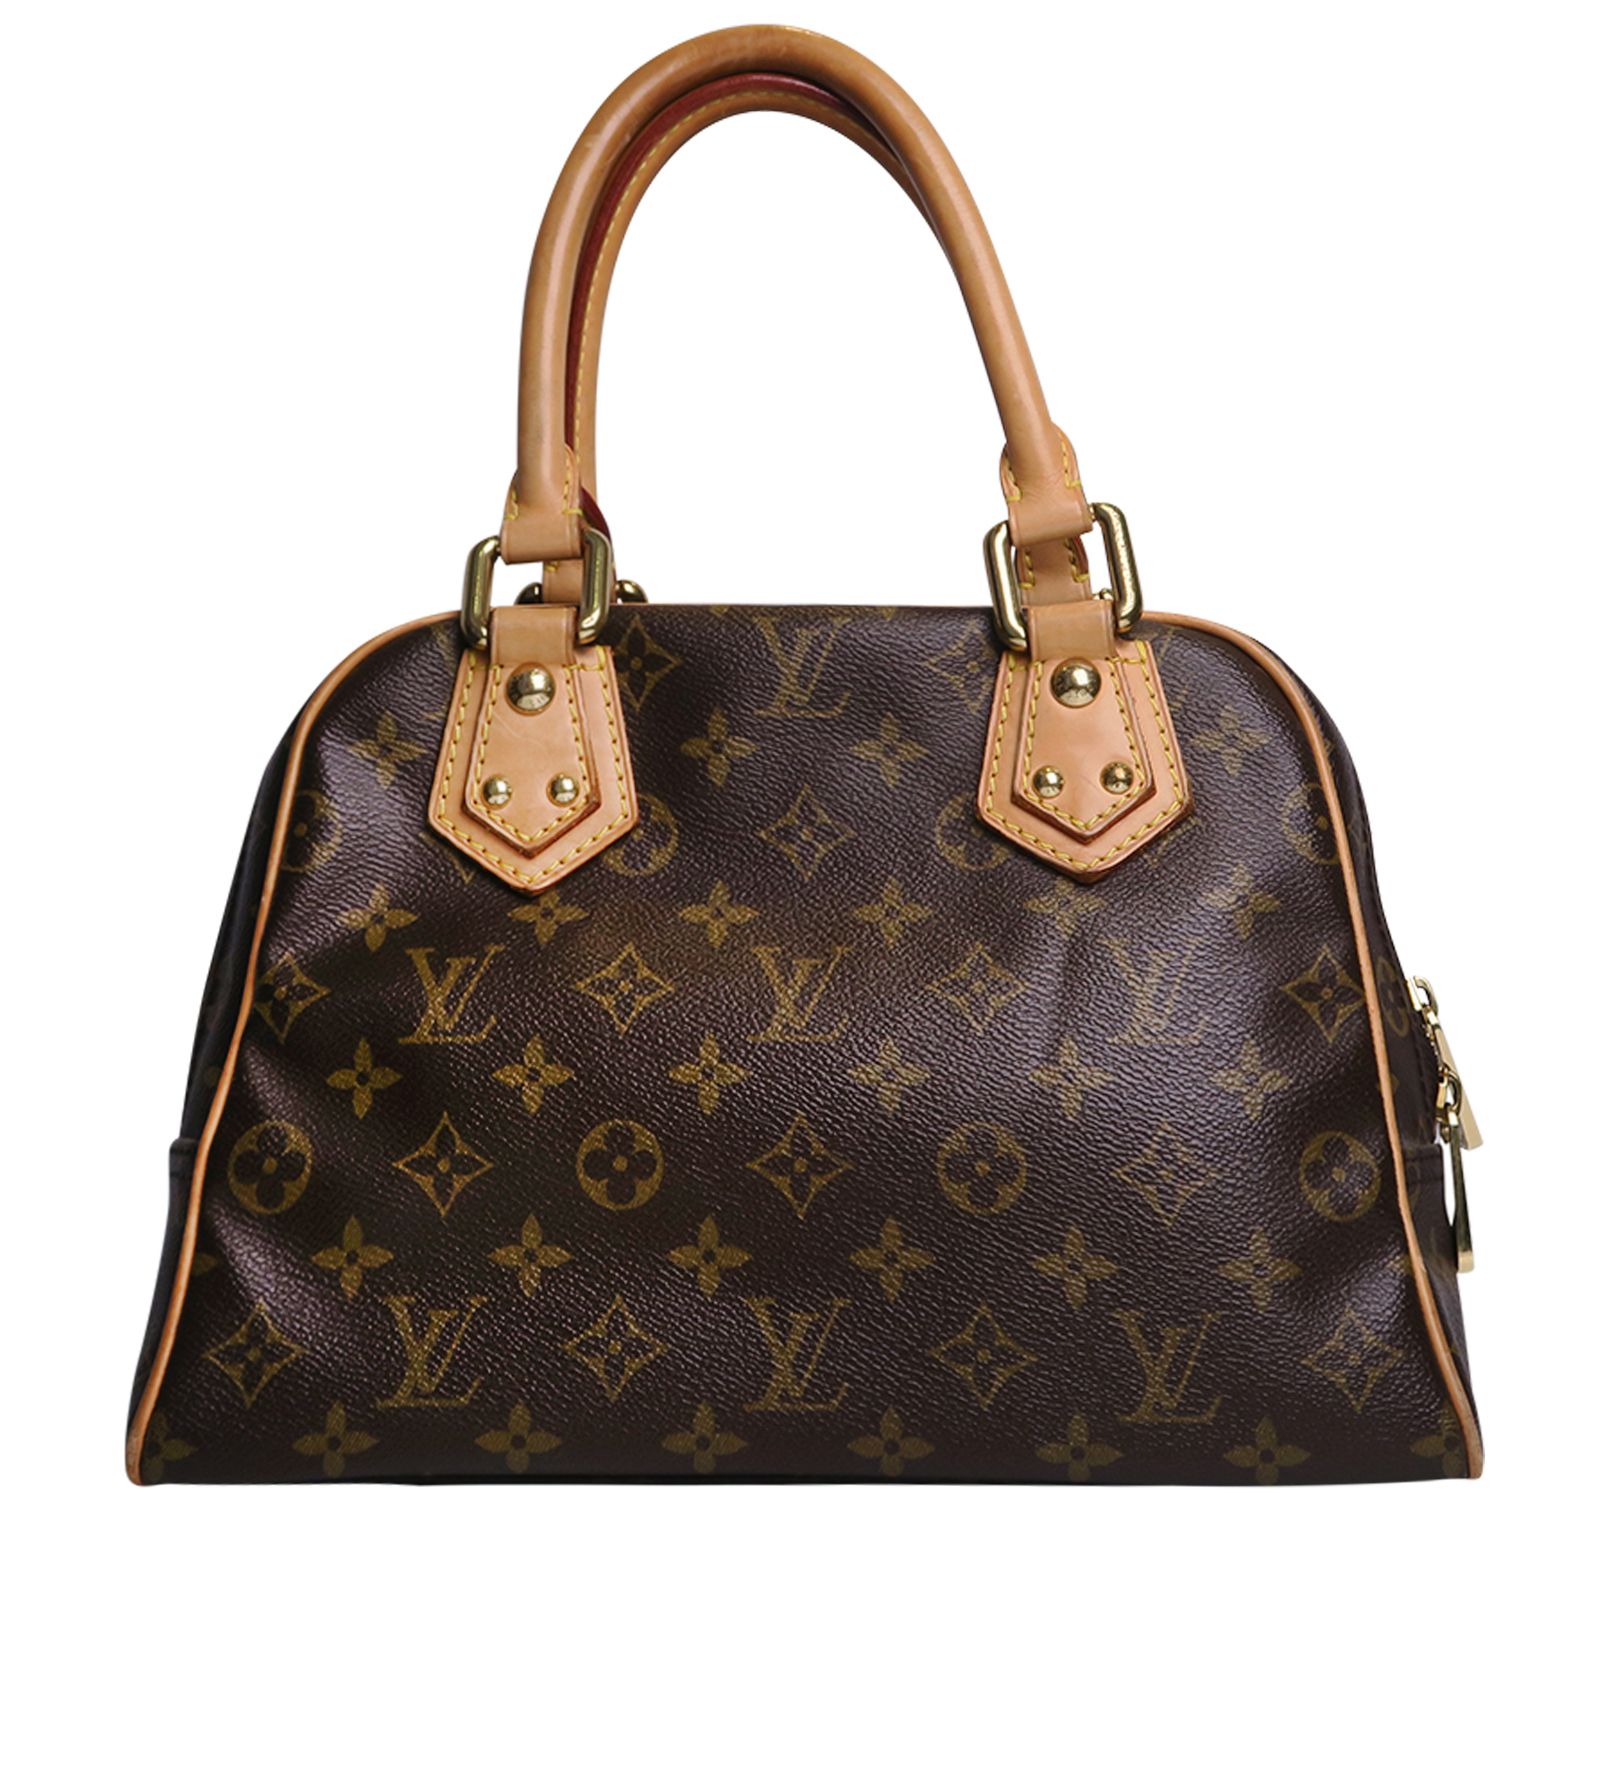 Louis Vuitton Manhattan Bag Reviews. New Model 